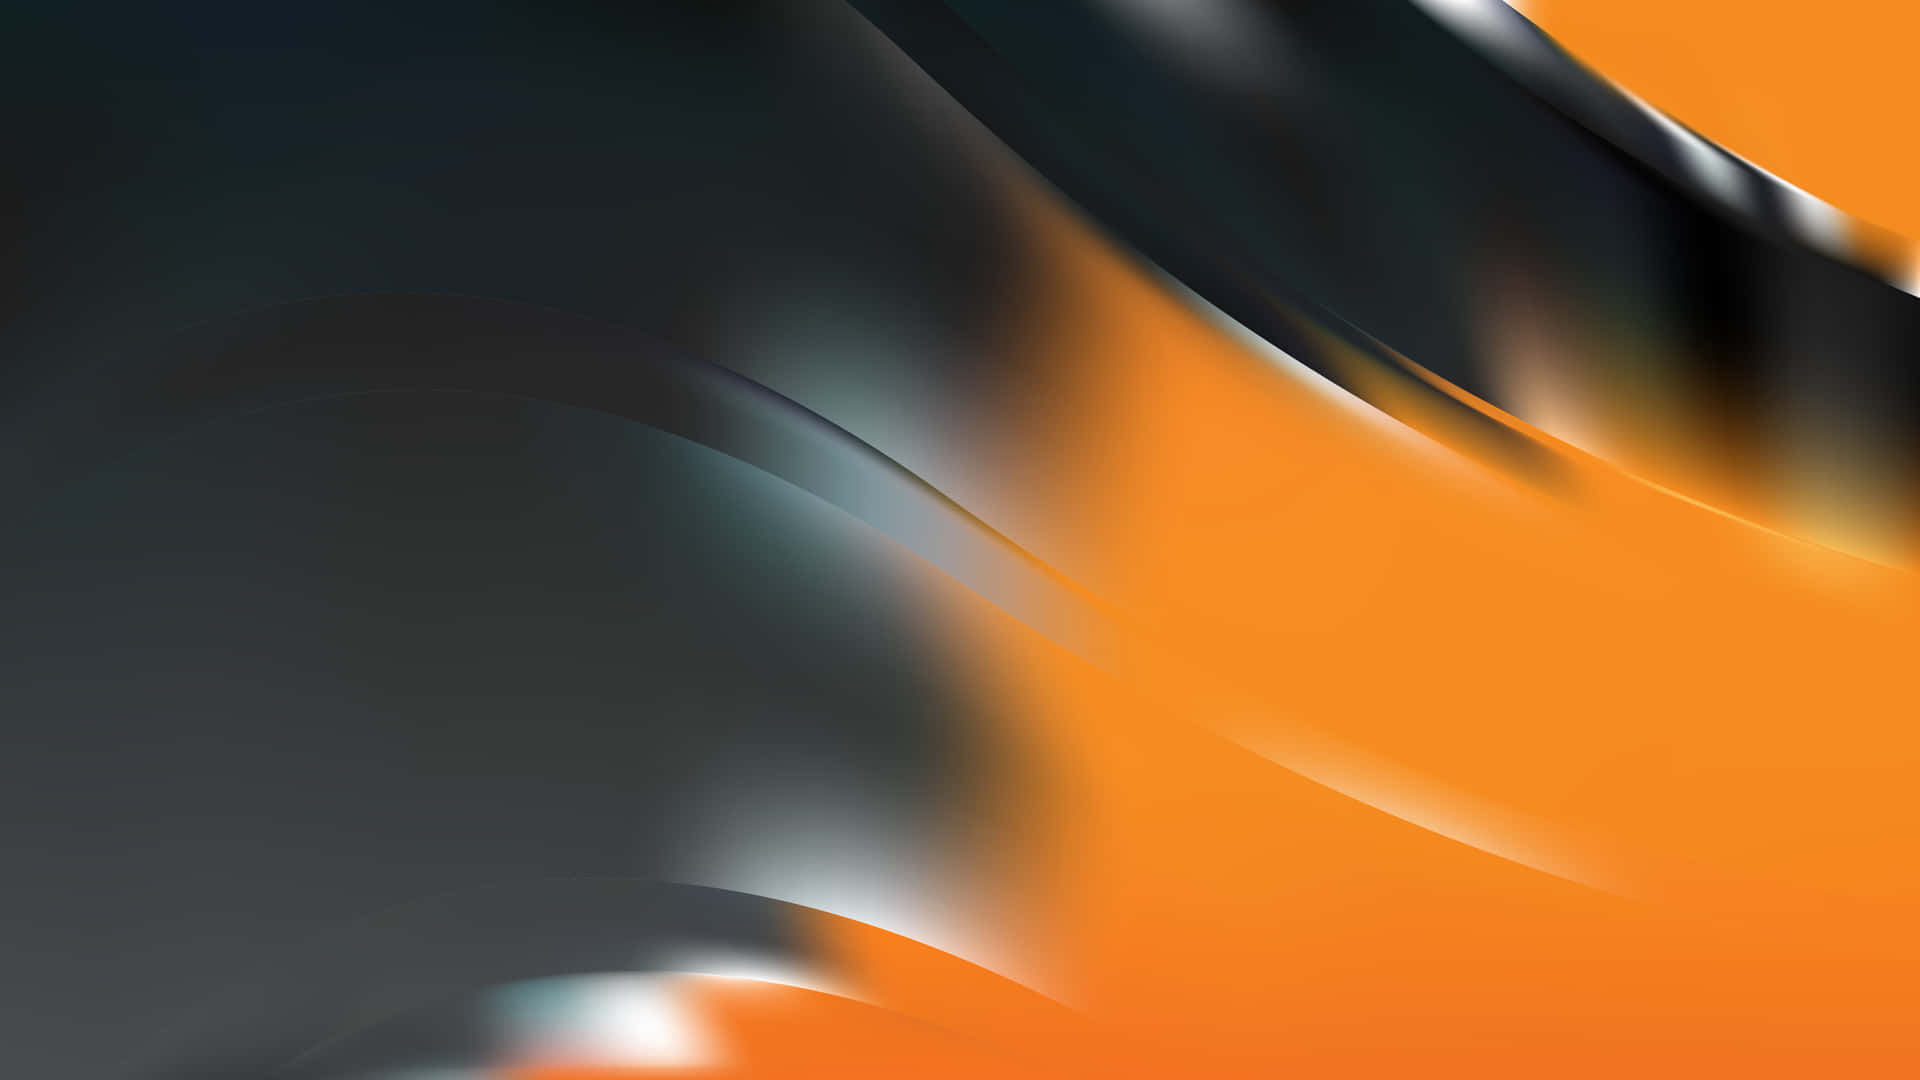 Tải về hình nền Orange And Black để tô điểm cho màn hình của bạn thêm sắc màu độc đáo và nổi bật. Hãy khám phá một thiết kế độc đáo, phù hợp với phong cách của you và mang đến cho bạn một trải nghiệm thăng hoa.